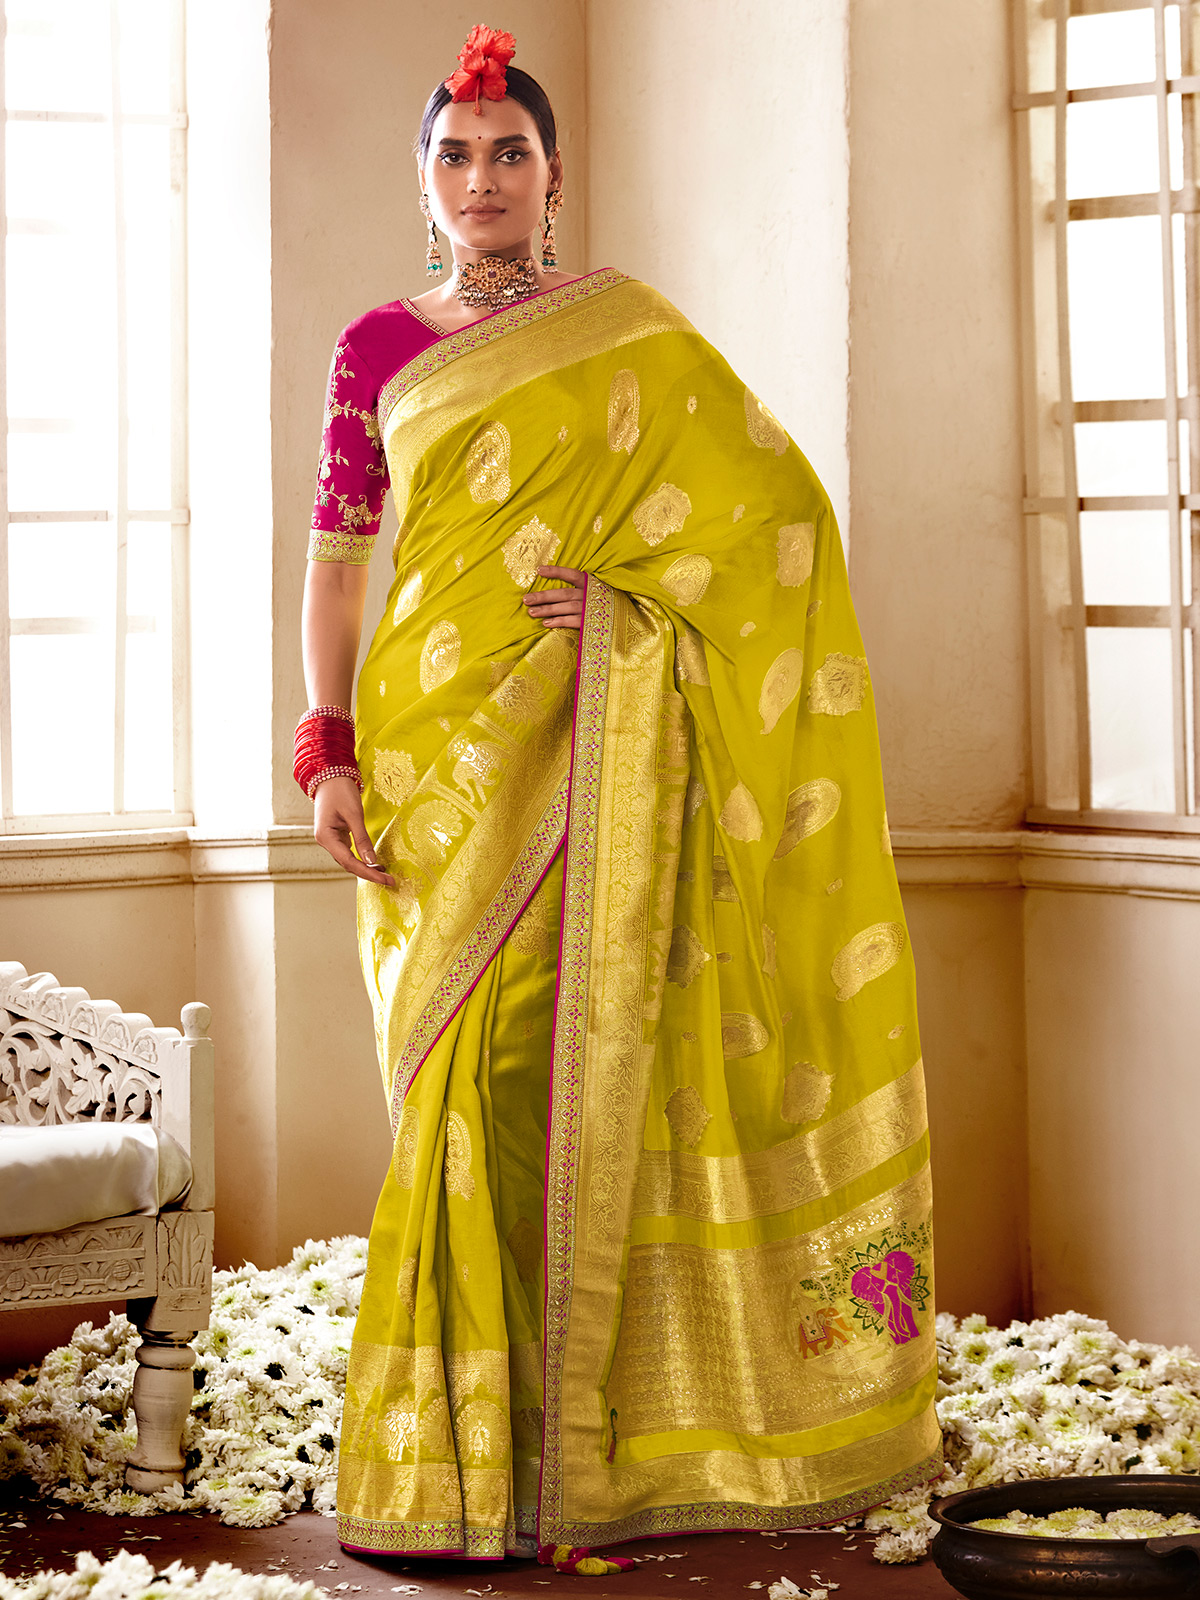 Palam Silks | Traditional Pattu Sarees | Green Silk Saree | Buy Online